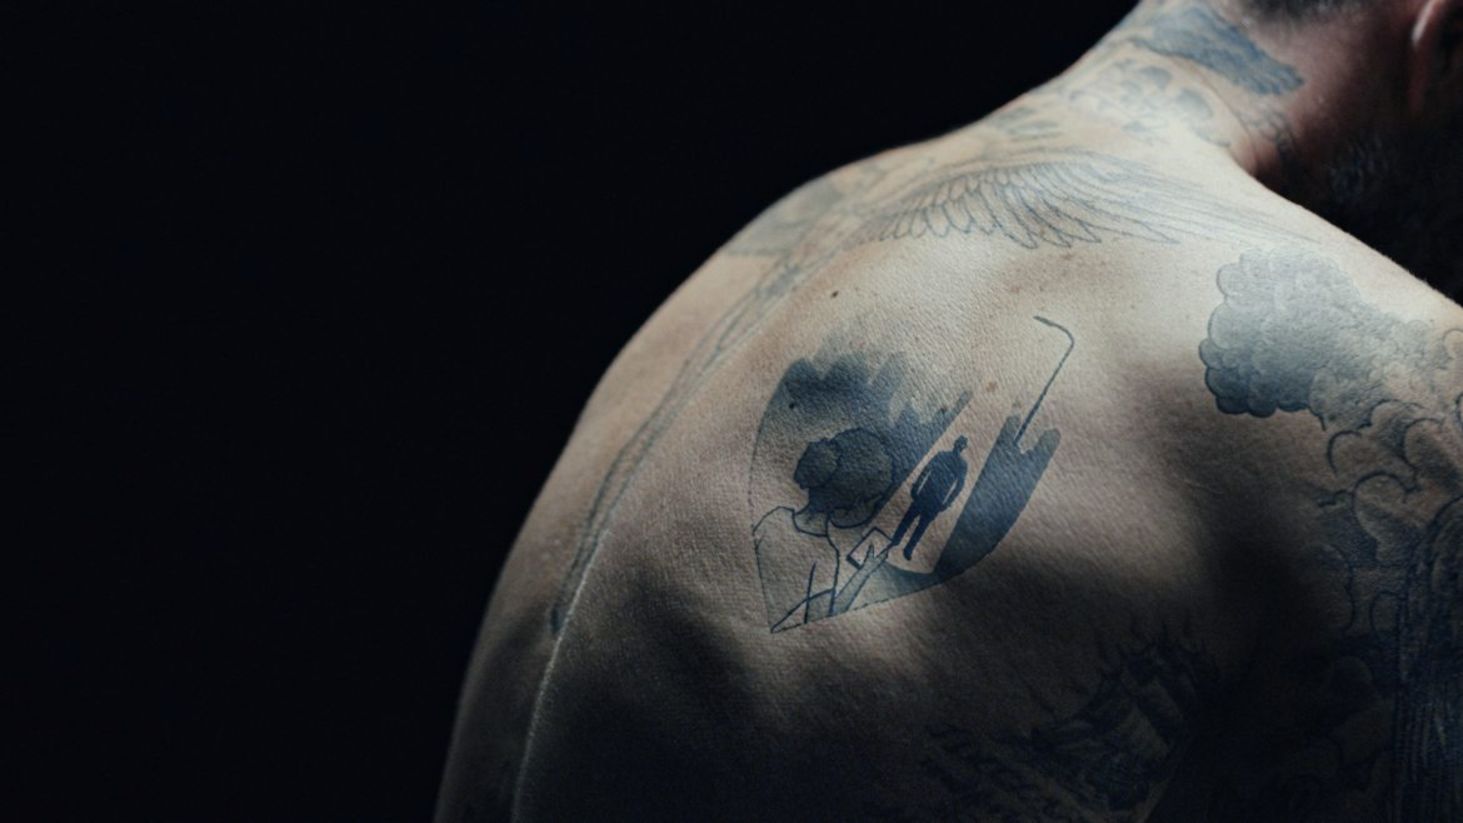 Odell Beckham Jr. shows off massive, back-spanning tattoo